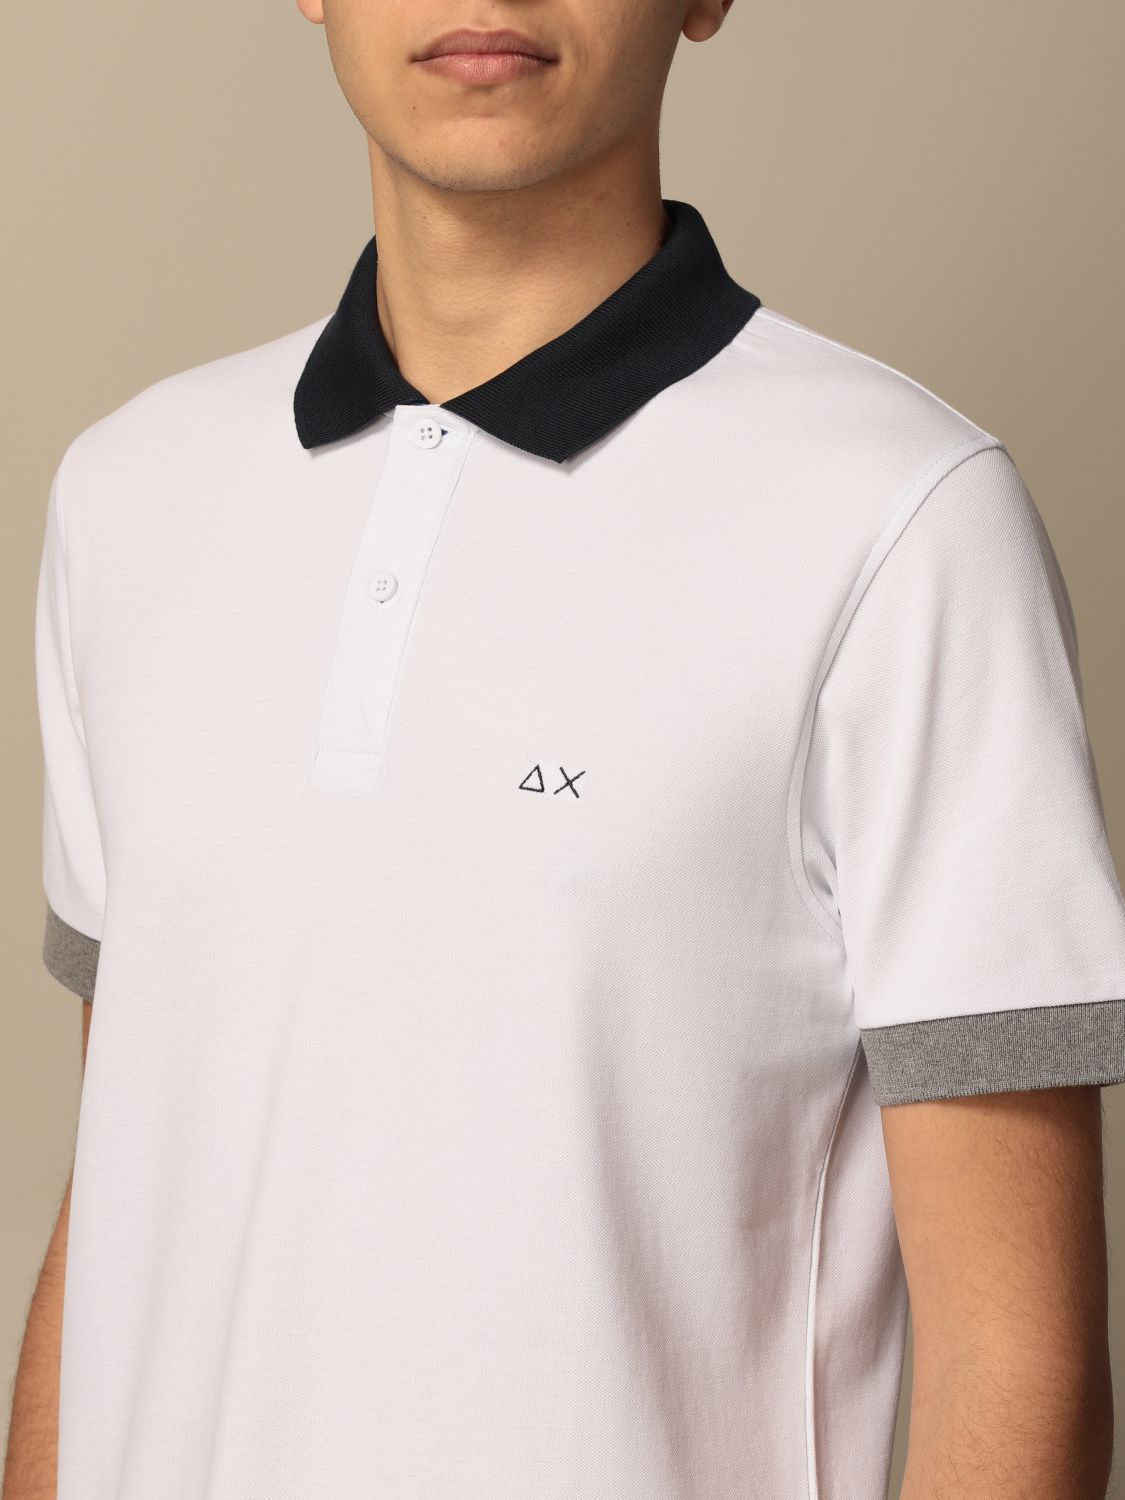 Polo shirt Sun 68: Sun 68 cotton polo shirt with logo white 3